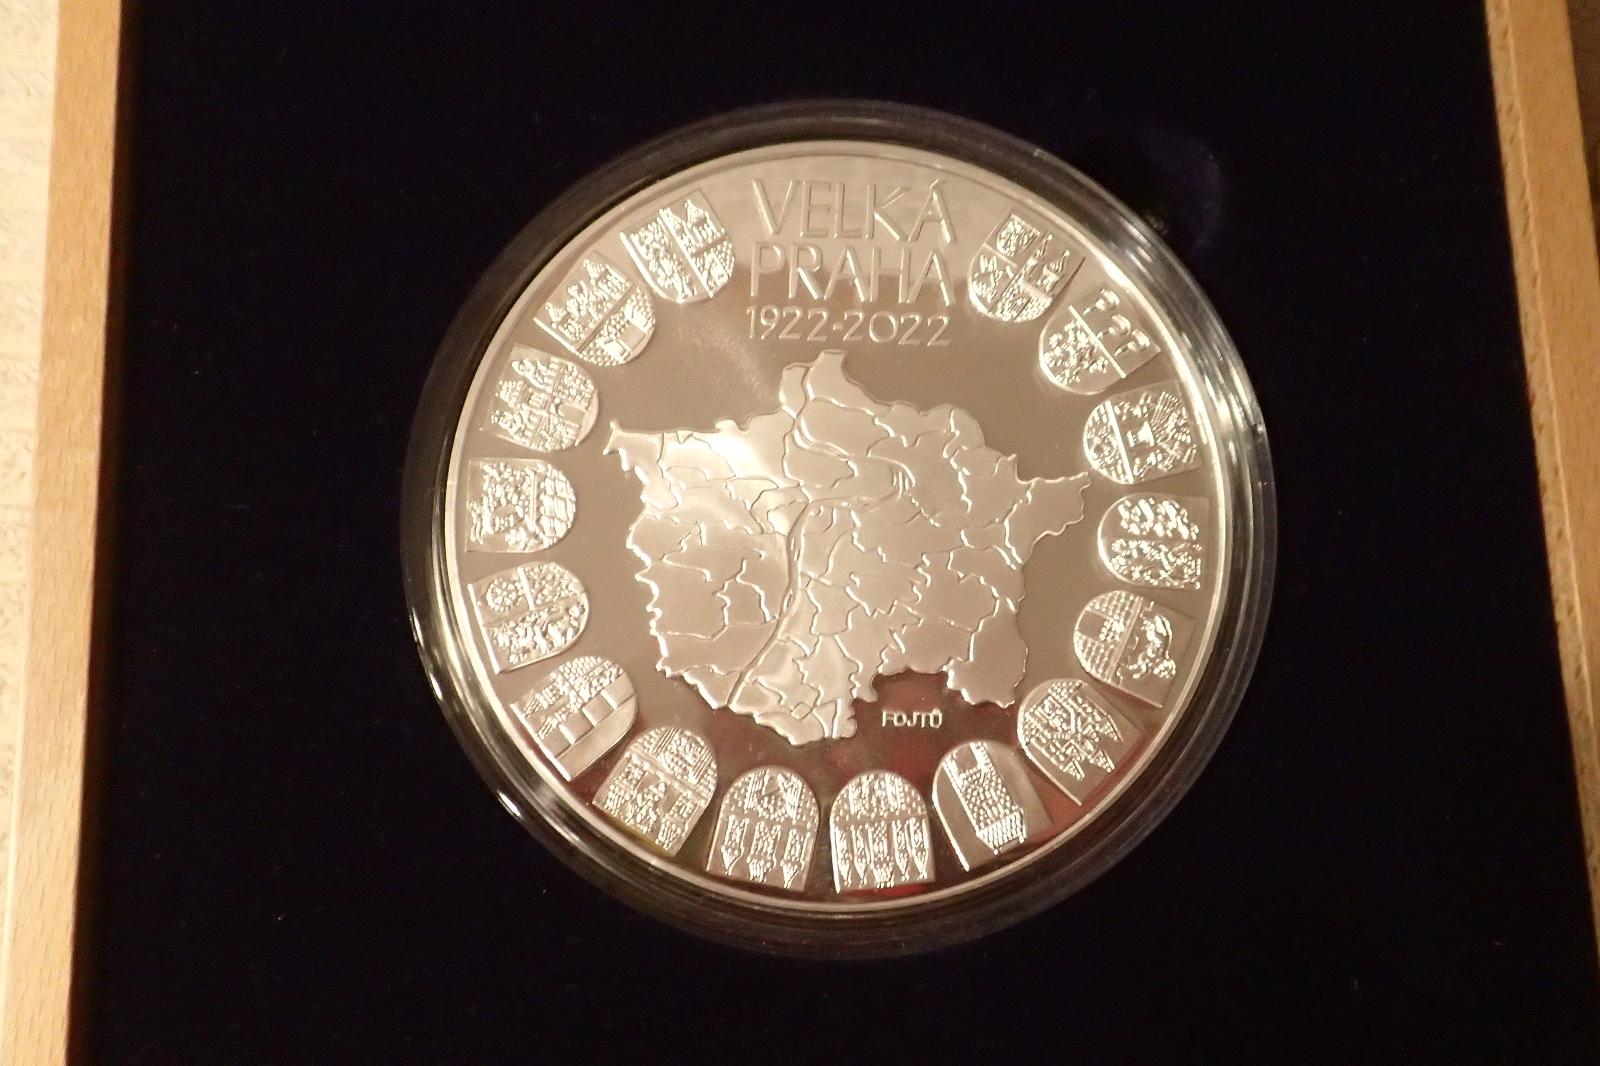 Mince 10000 Kč Ag - 100. výročie založenia Veľkej Prahy - leštená (PROOF) - Numizmatika